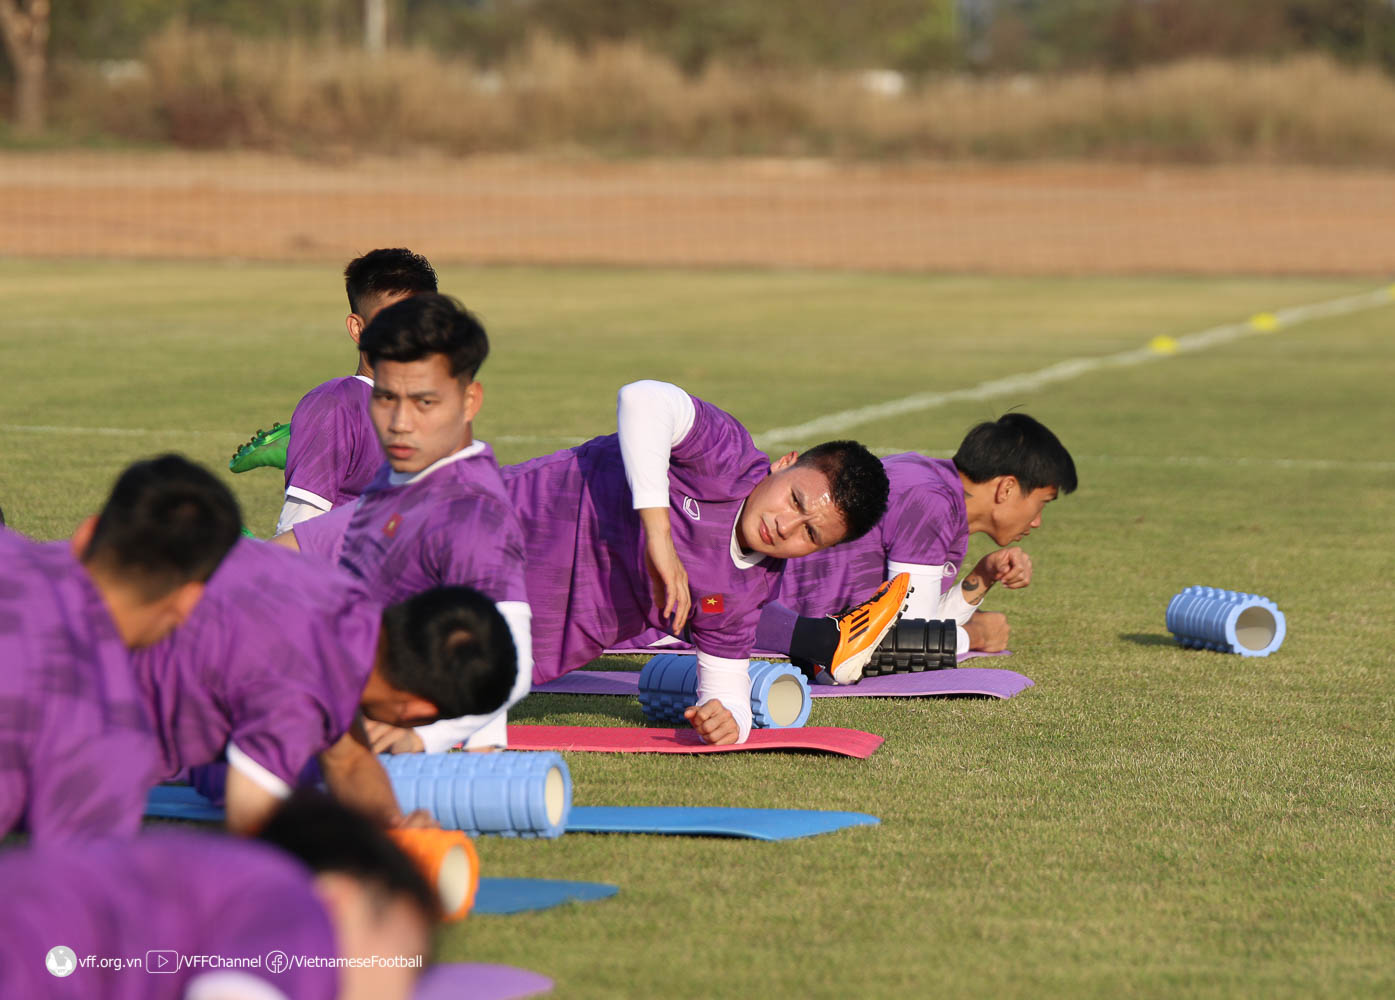 HLV Park Hang-seo tập trung rèn thể lực cho Phan Văn Đức trước trận đấu với Lào - Ảnh 7.